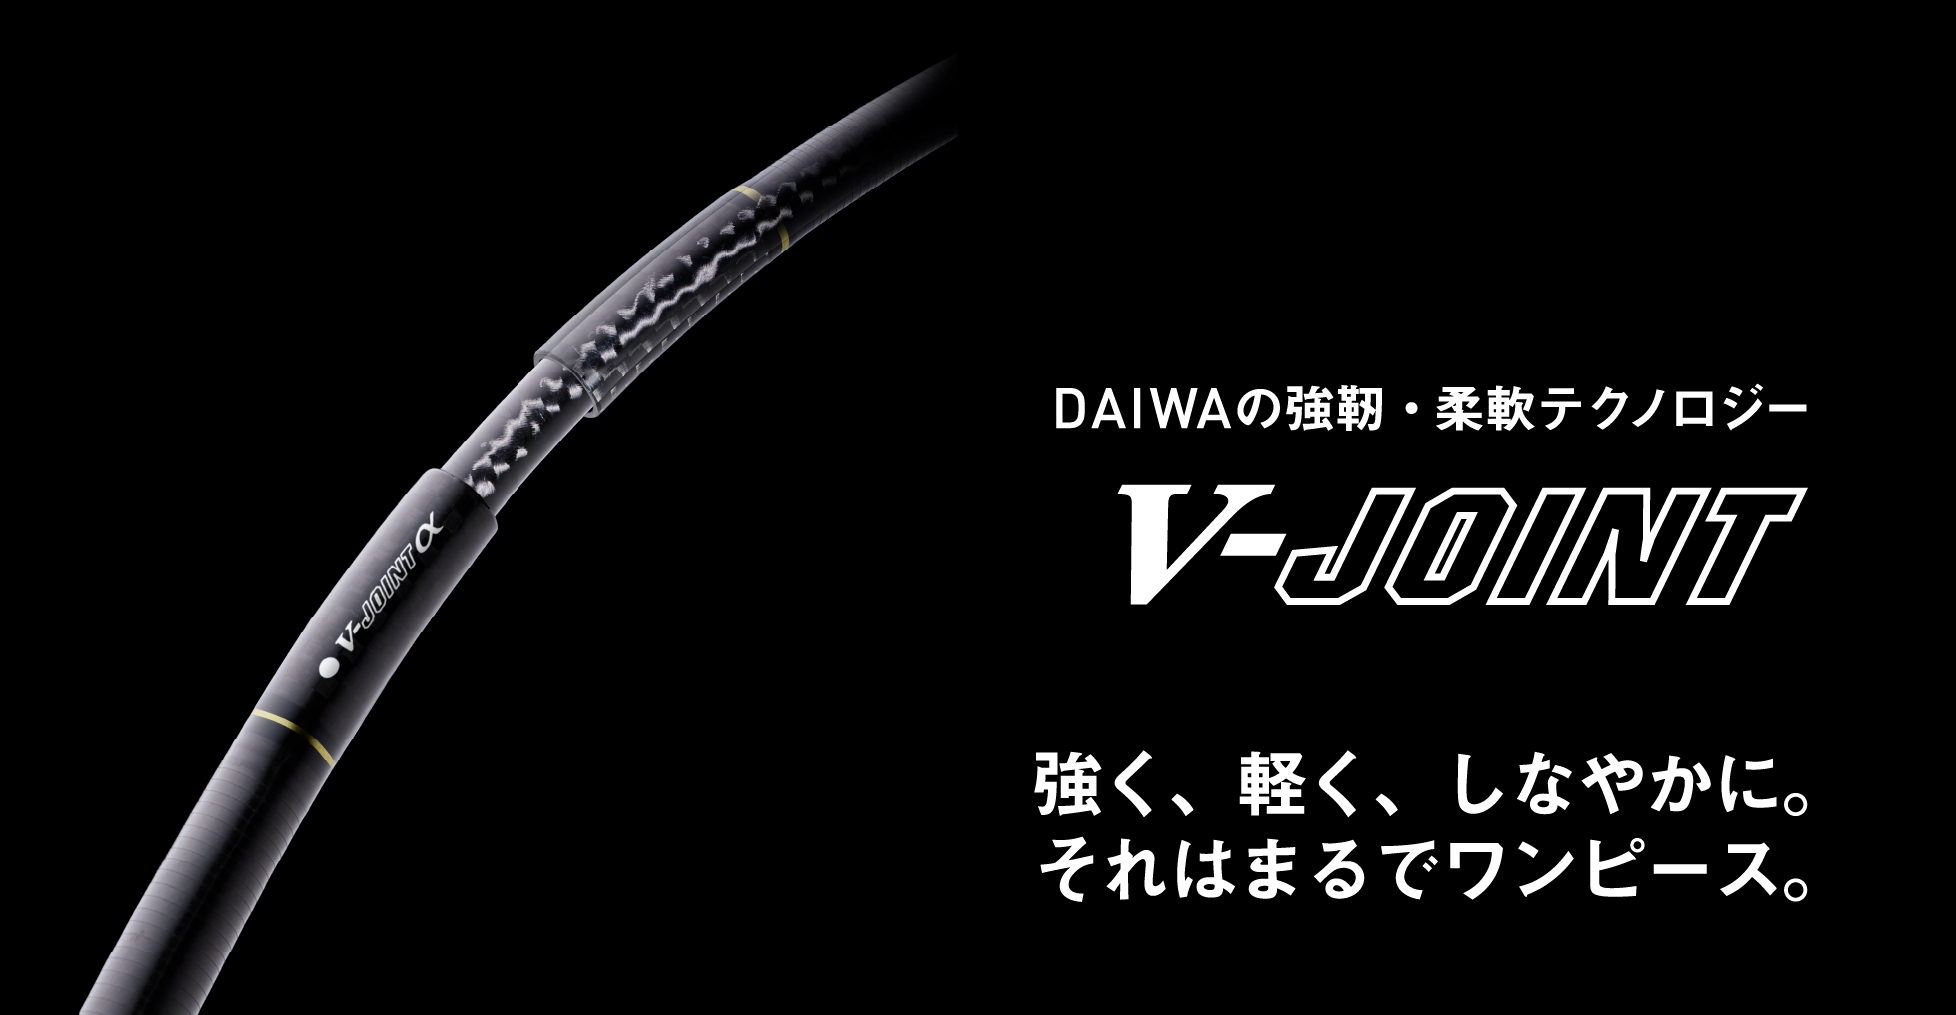 DAIWAの強靭・柔軟テクノロジー V-ジョイント / V-ジョイントα 強く、軽く、しなやかに。それはまるでワンピース。